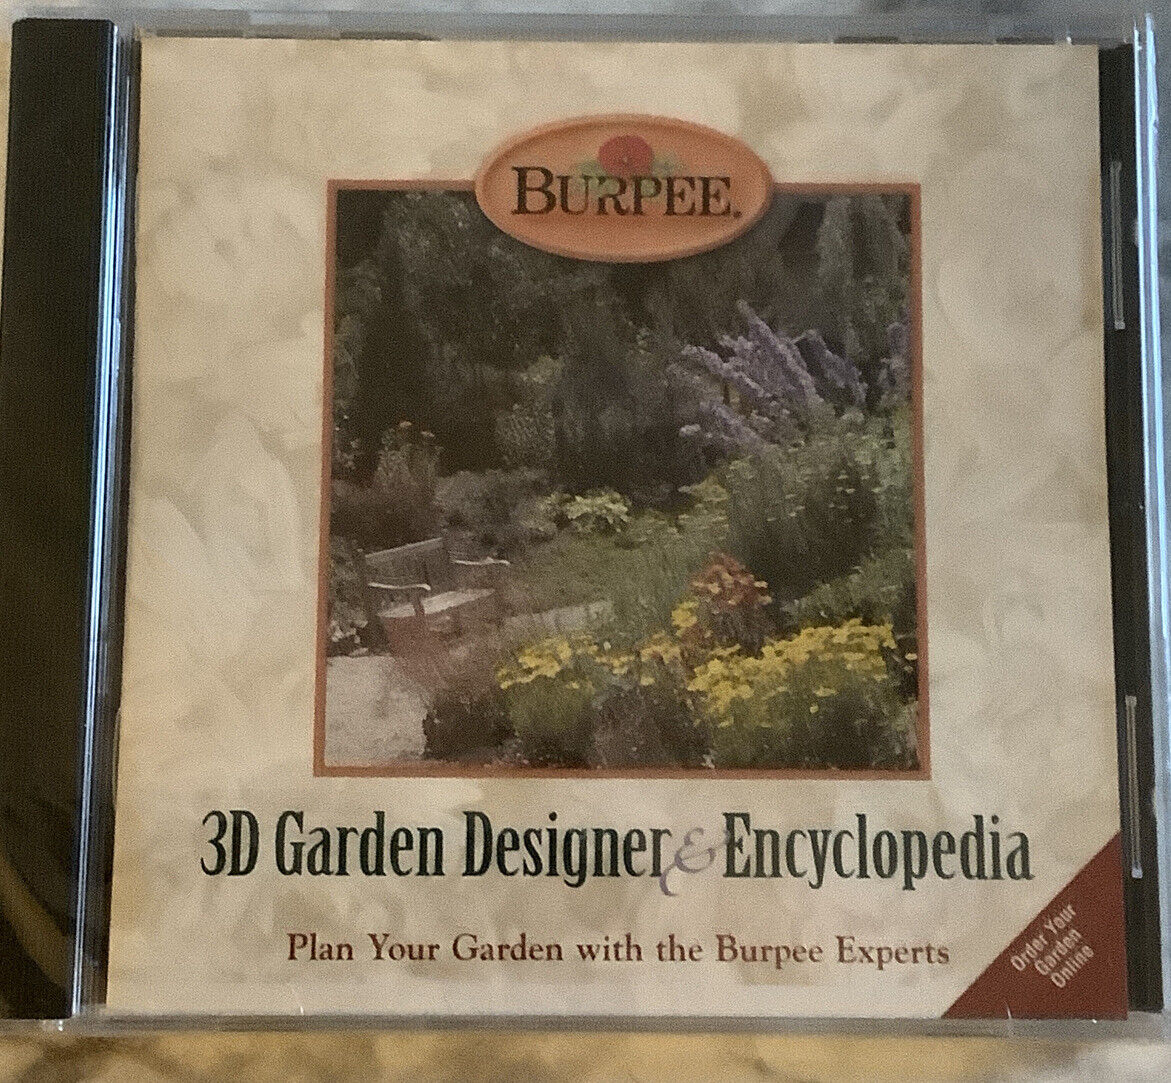 Burpee 3D Garden Designer & Encyclopedia CD-ROM for Windows - NEW Sealed Win 95